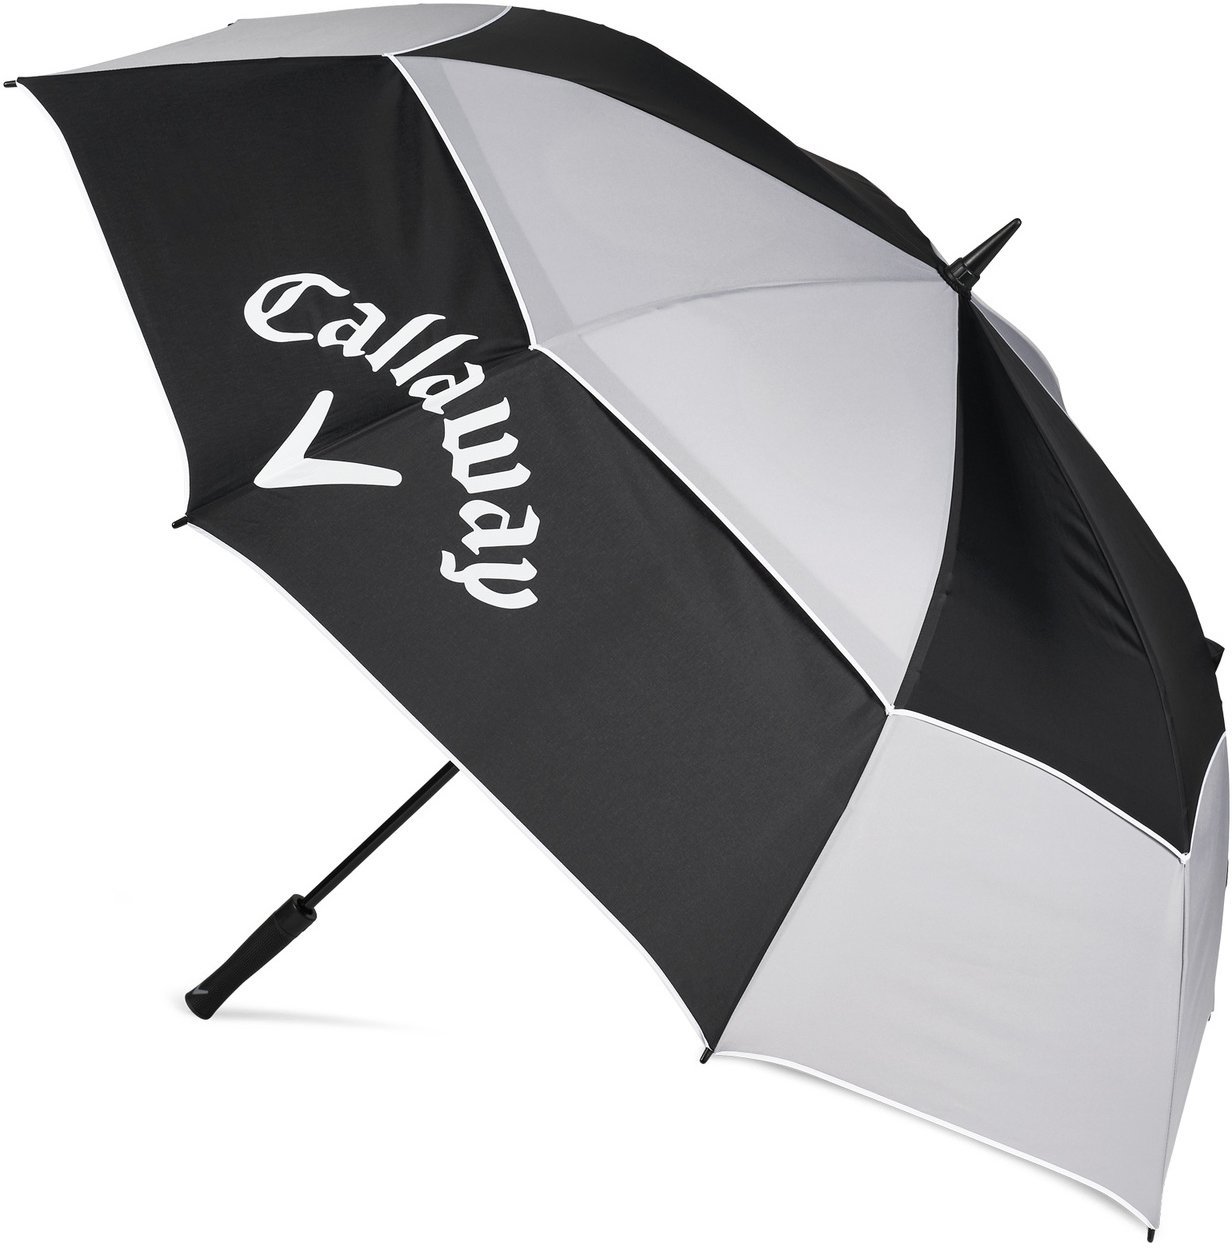 Umbrella Callaway Tour Autentic Umbrella 68 Black/Grey/White